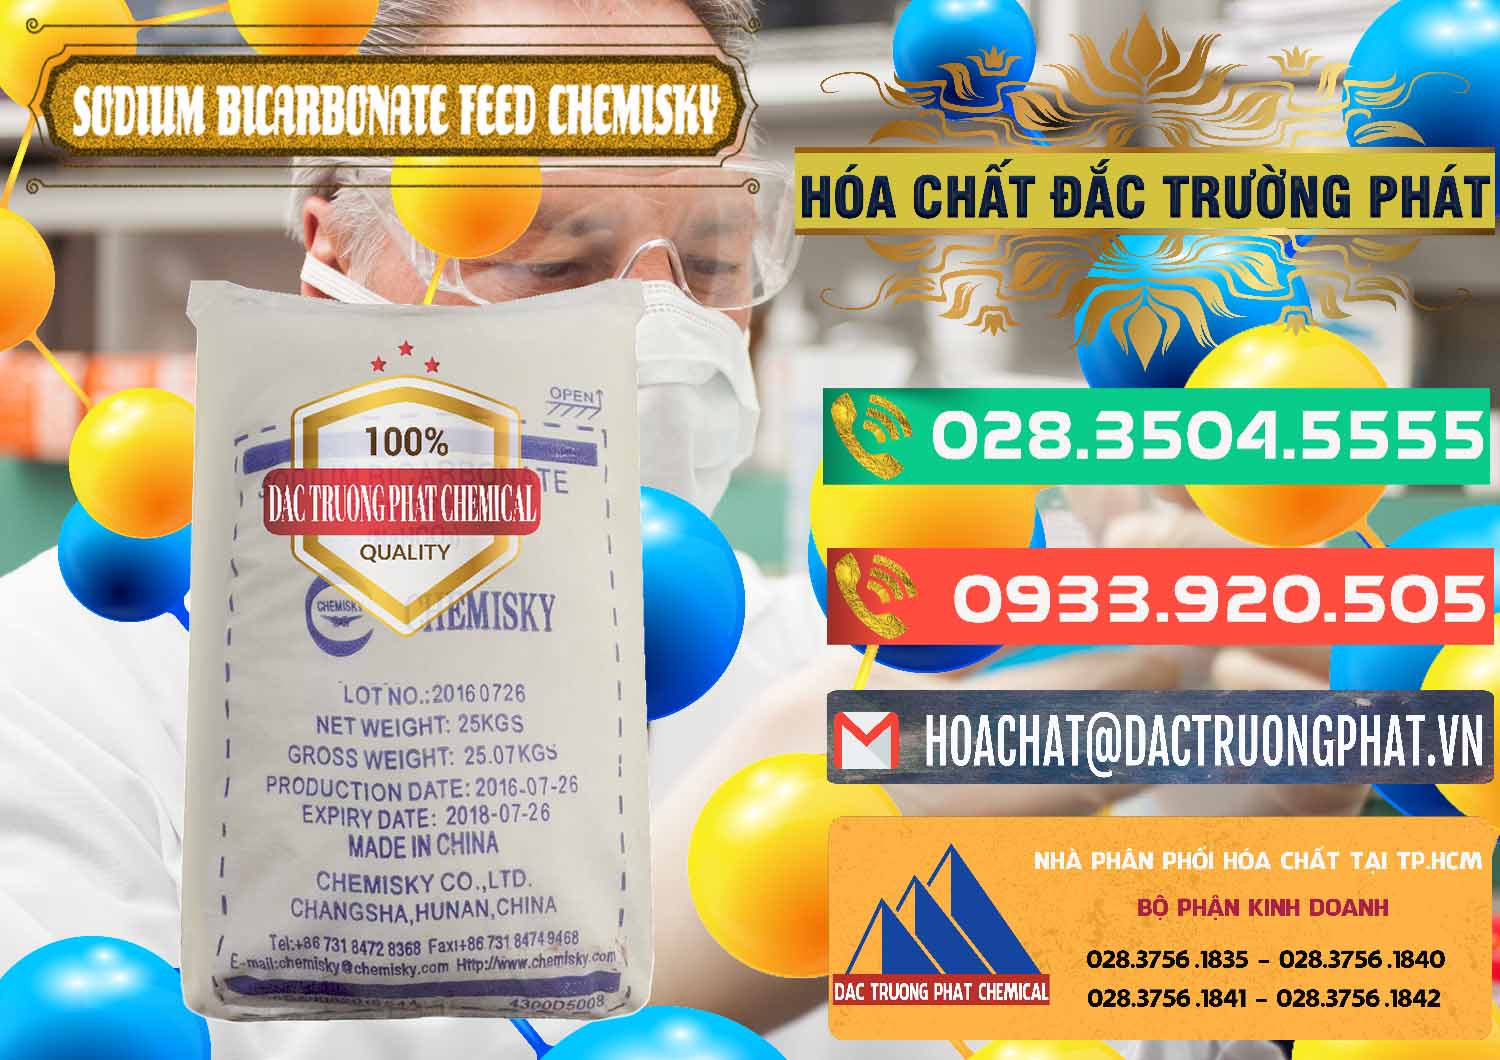 Nơi chuyên bán và cung cấp Sodium Bicarbonate – Bicar NaHCO3 Feed Grade Chemisky Trung Quốc China - 0264 - Nơi cung ứng & phân phối hóa chất tại TP.HCM - congtyhoachat.com.vn